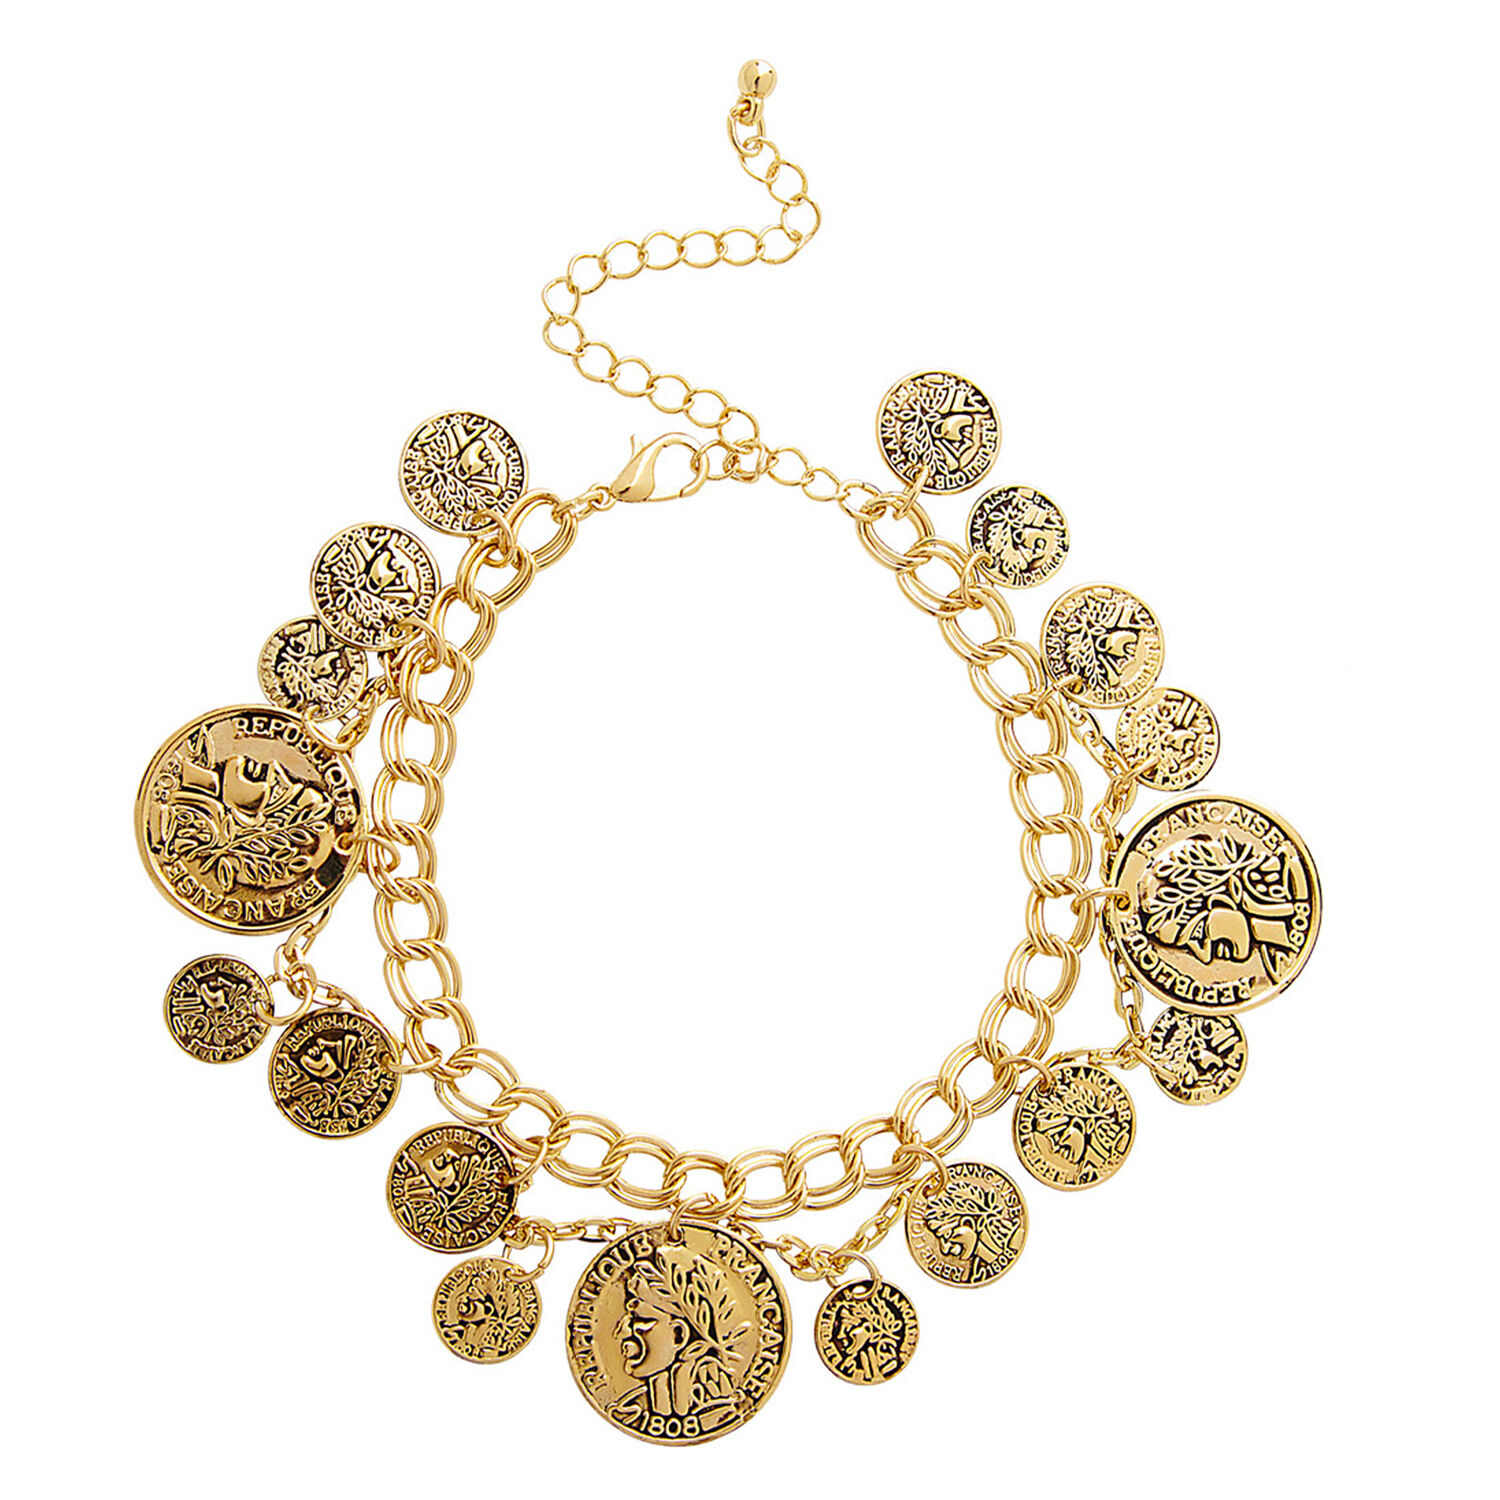 NEU Goldenes Armband mit Münzen für orientalische Kostüme, Wahrsagerinnen & Co.